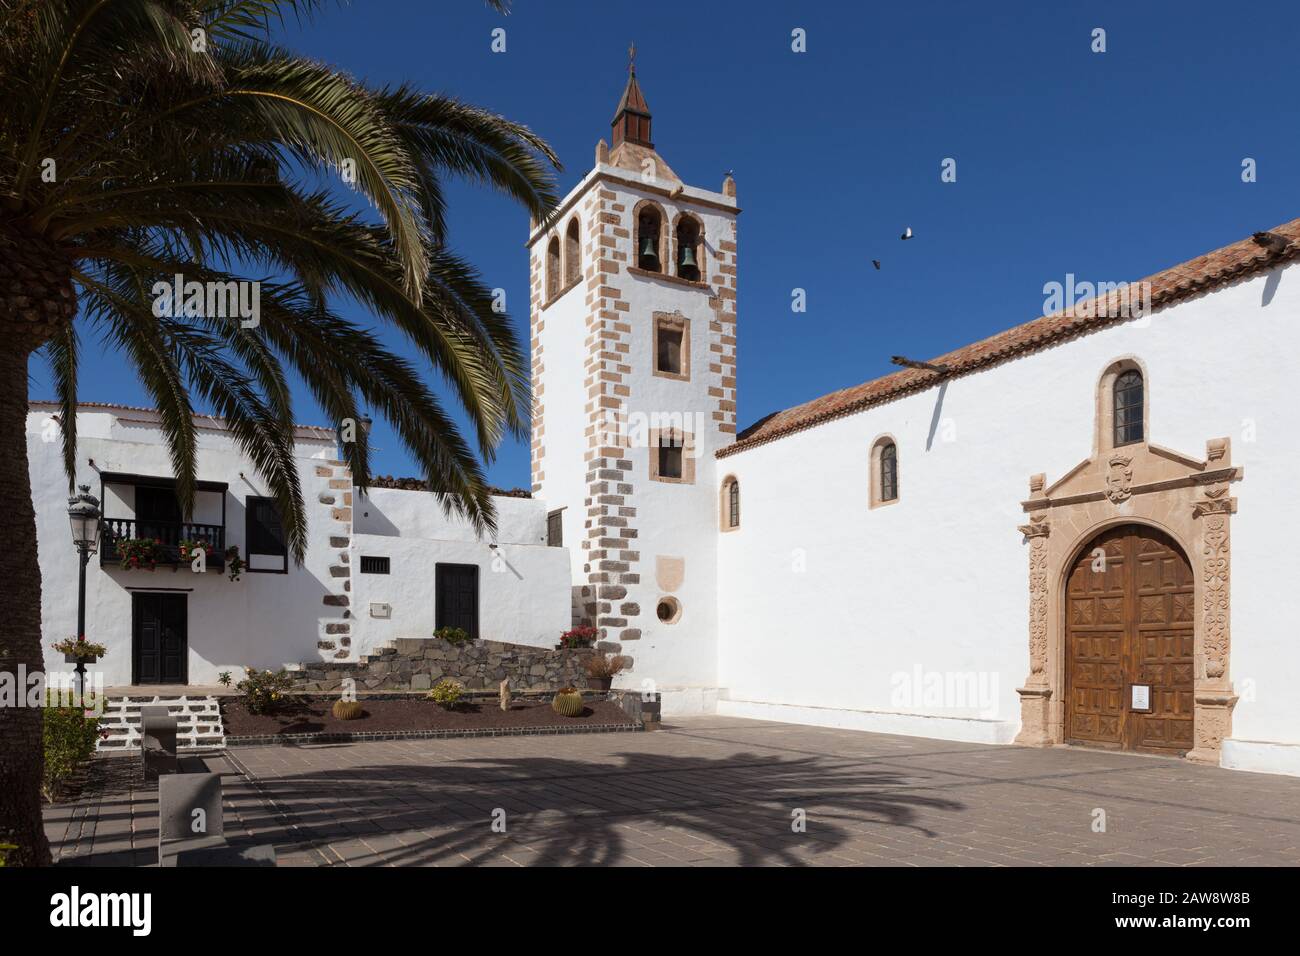 Iglesia Matriz de la Concepción (Iglesia de Santa María de Betancuria), Betancuria, Fuerteventura, Canary Islands Stock Photo